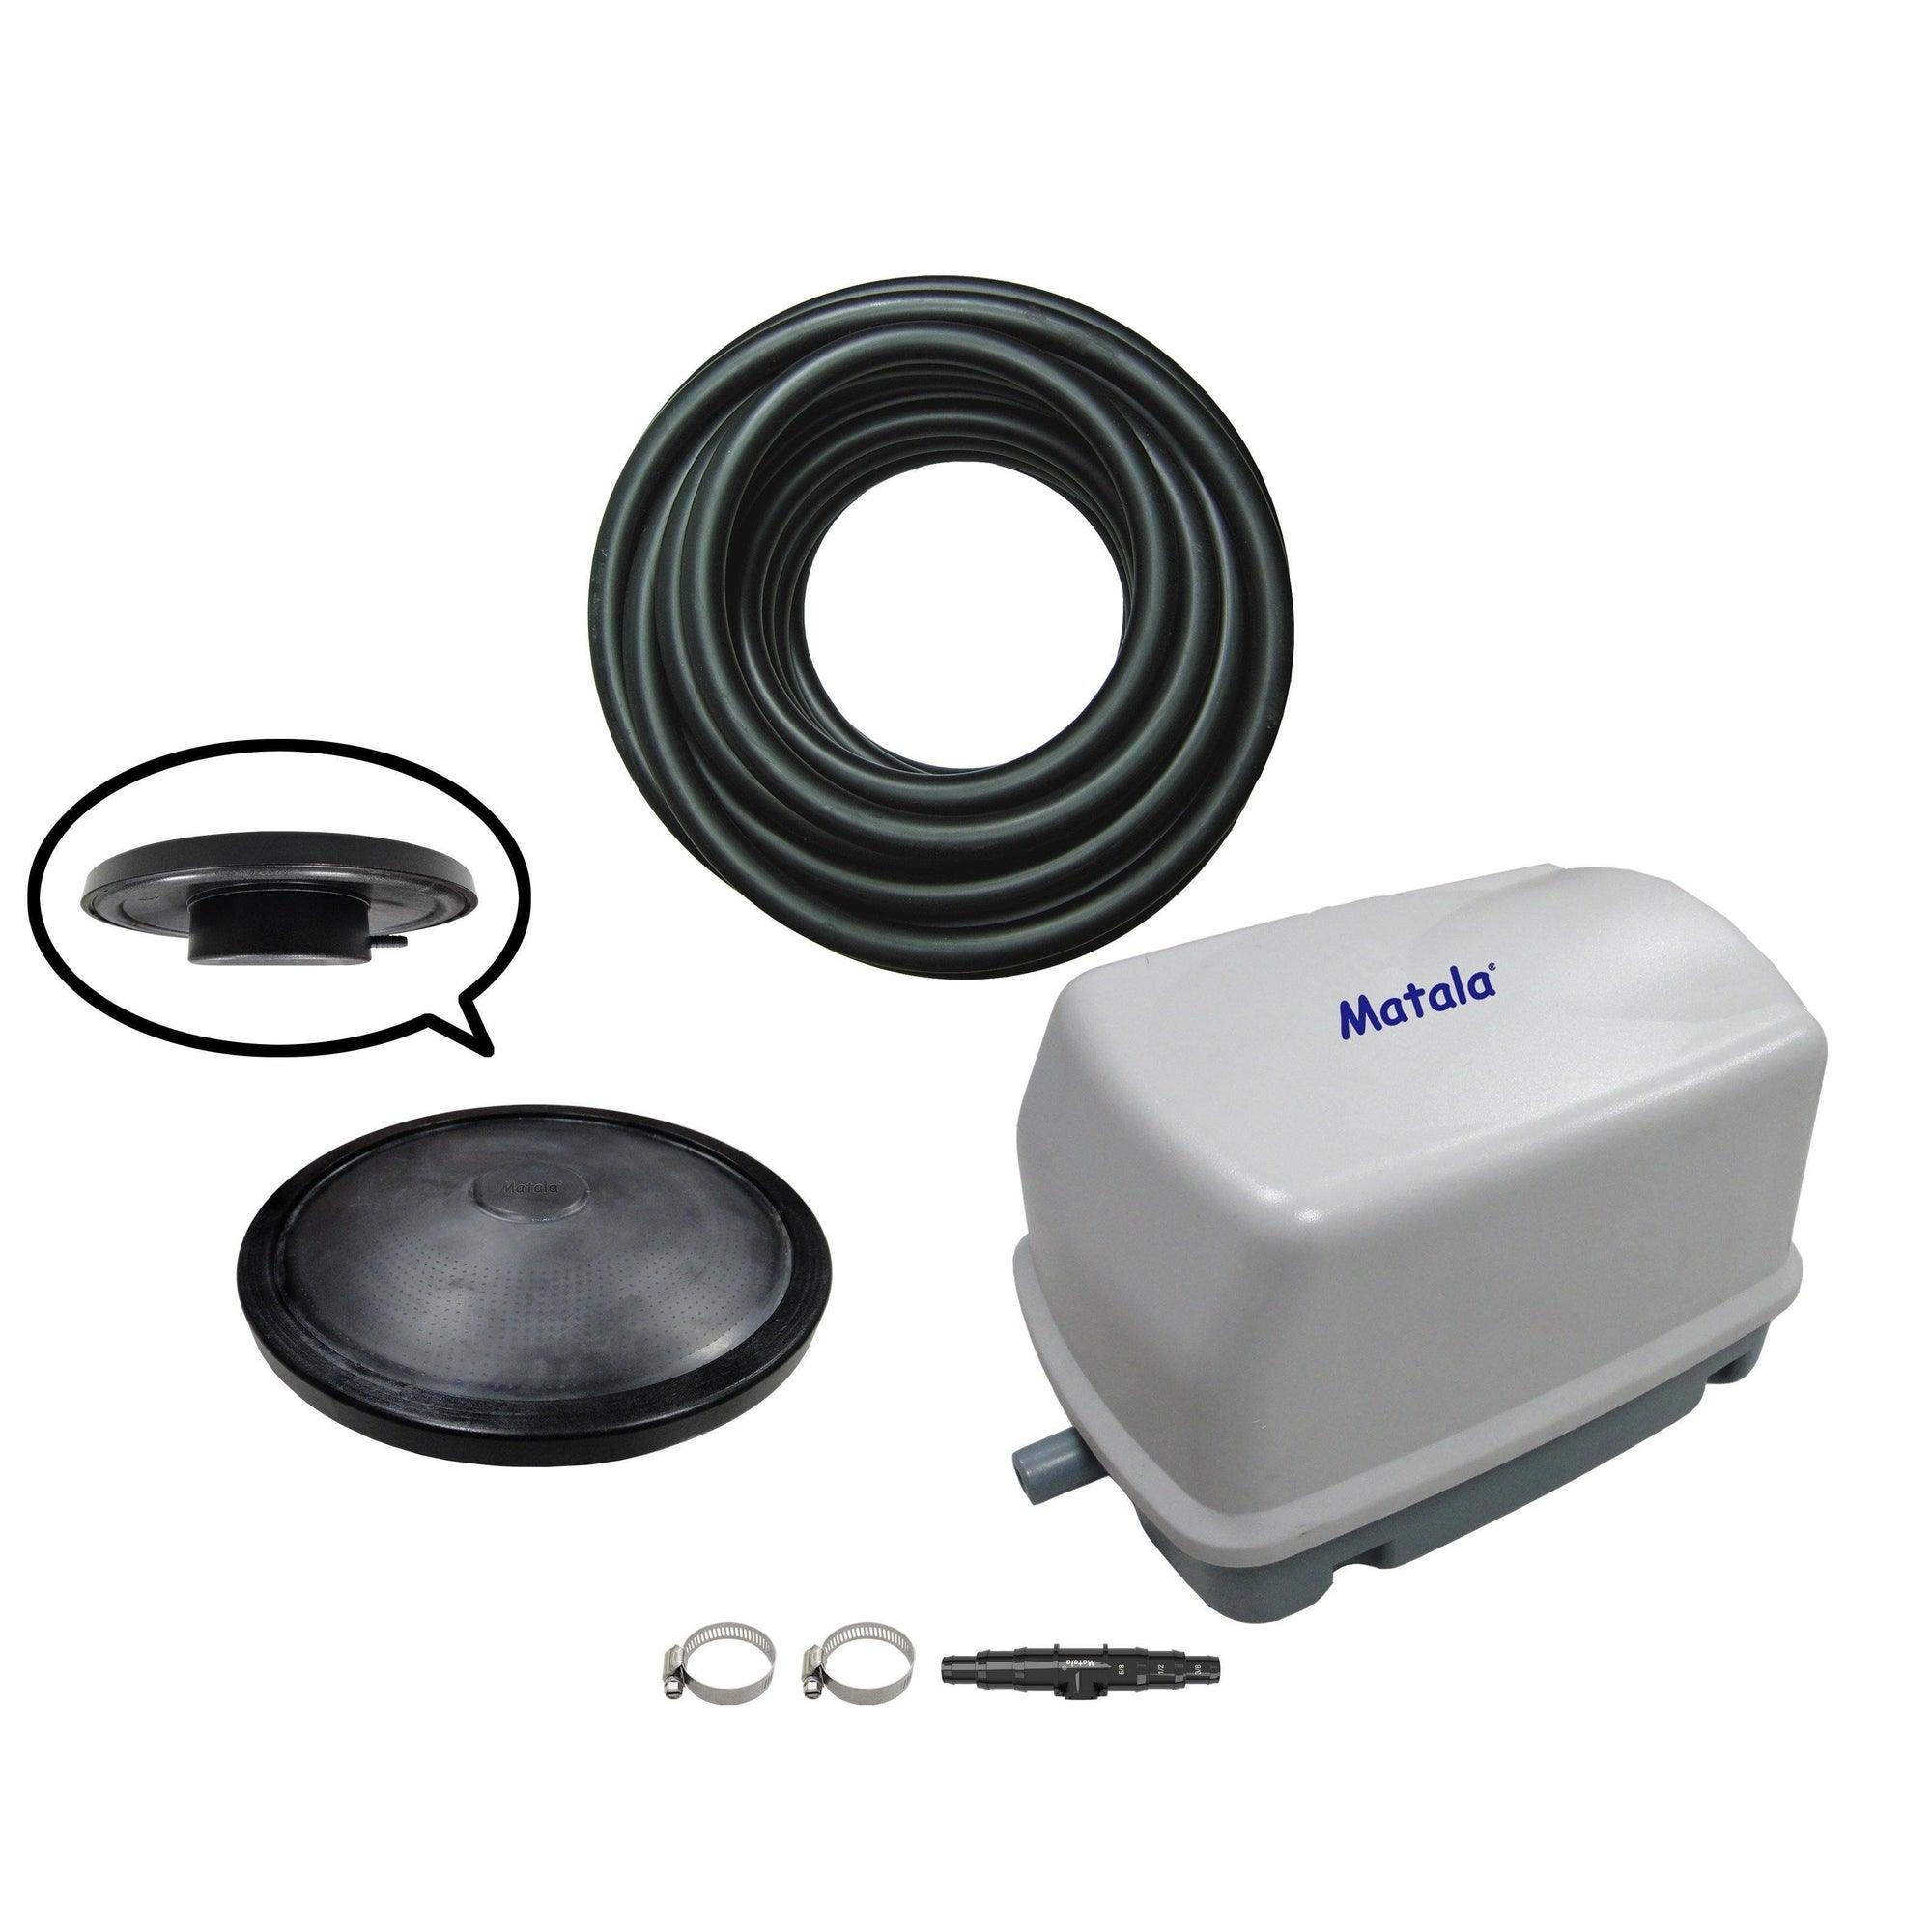 Matala MEA Pro 3 Plus-W - 5,000 Gallon Pond Aeration System - Play It Koi